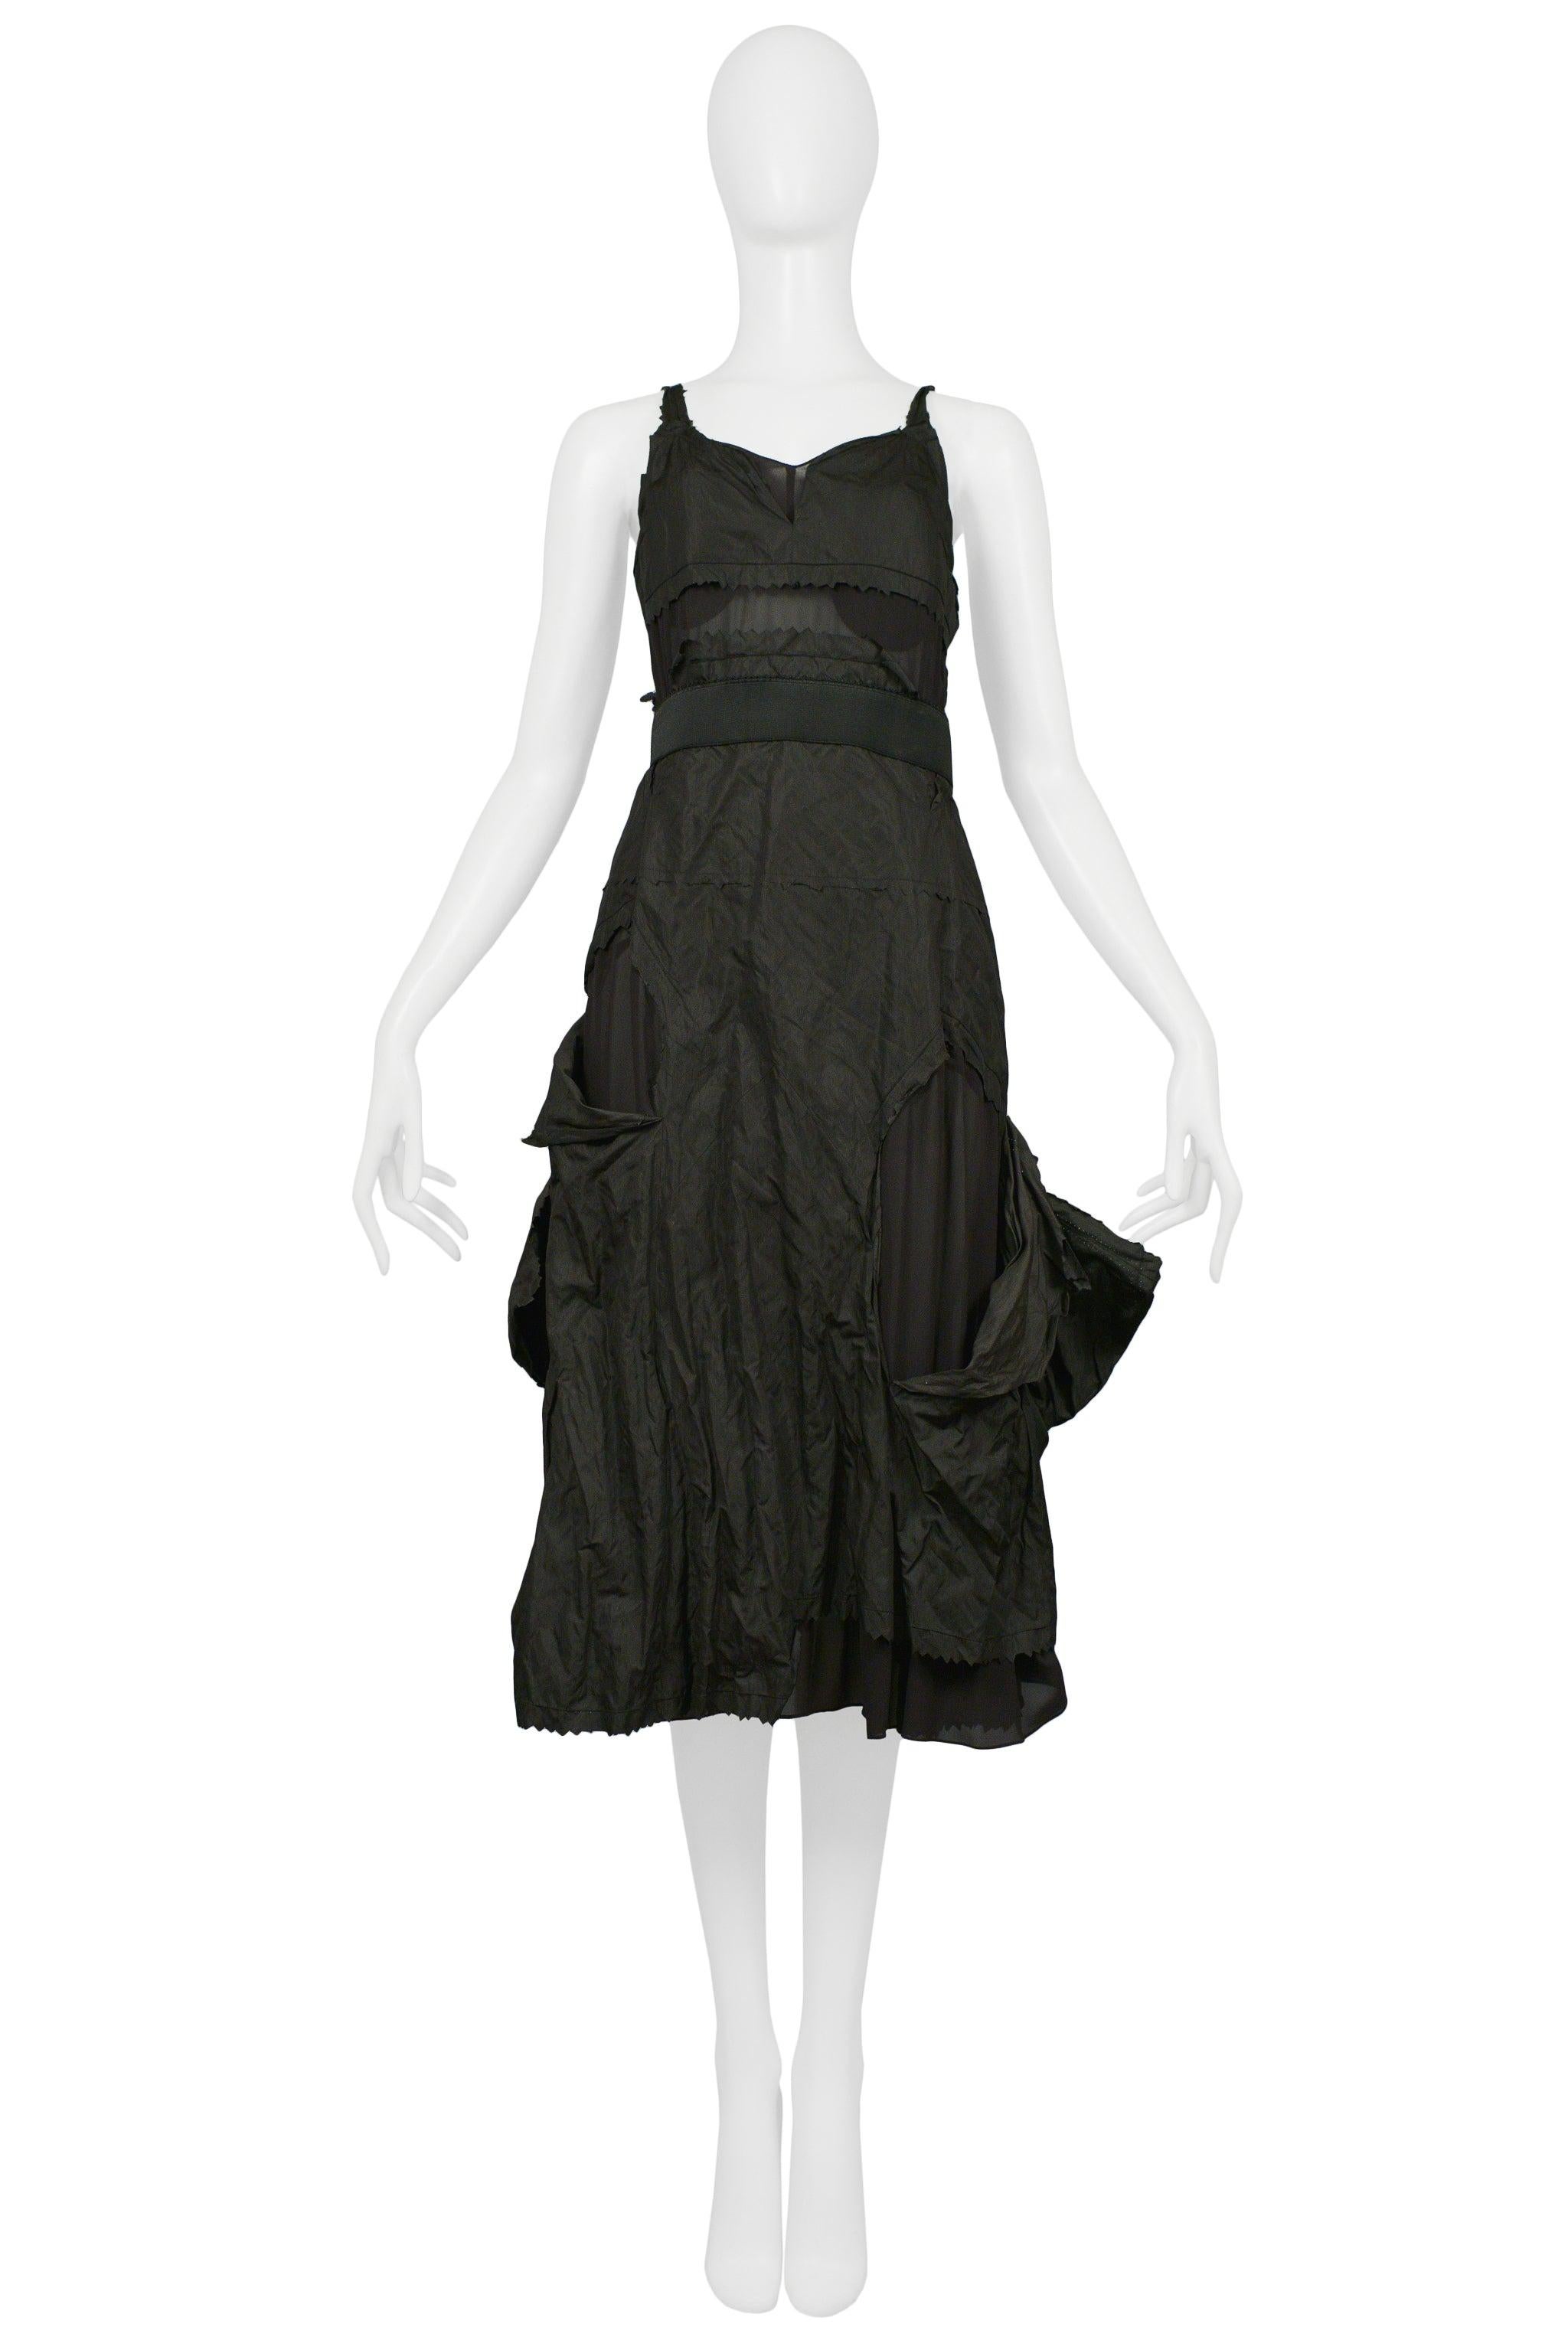 Resurrection a le plaisir de vous proposer cette robe vintage Christian Dior by John Galliano en taffetas noir, avec des découpes, des panneaux en lambeaux, des bretelles étroites, un soutien-gorge, des panneaux transparents, un dos bas et des bords